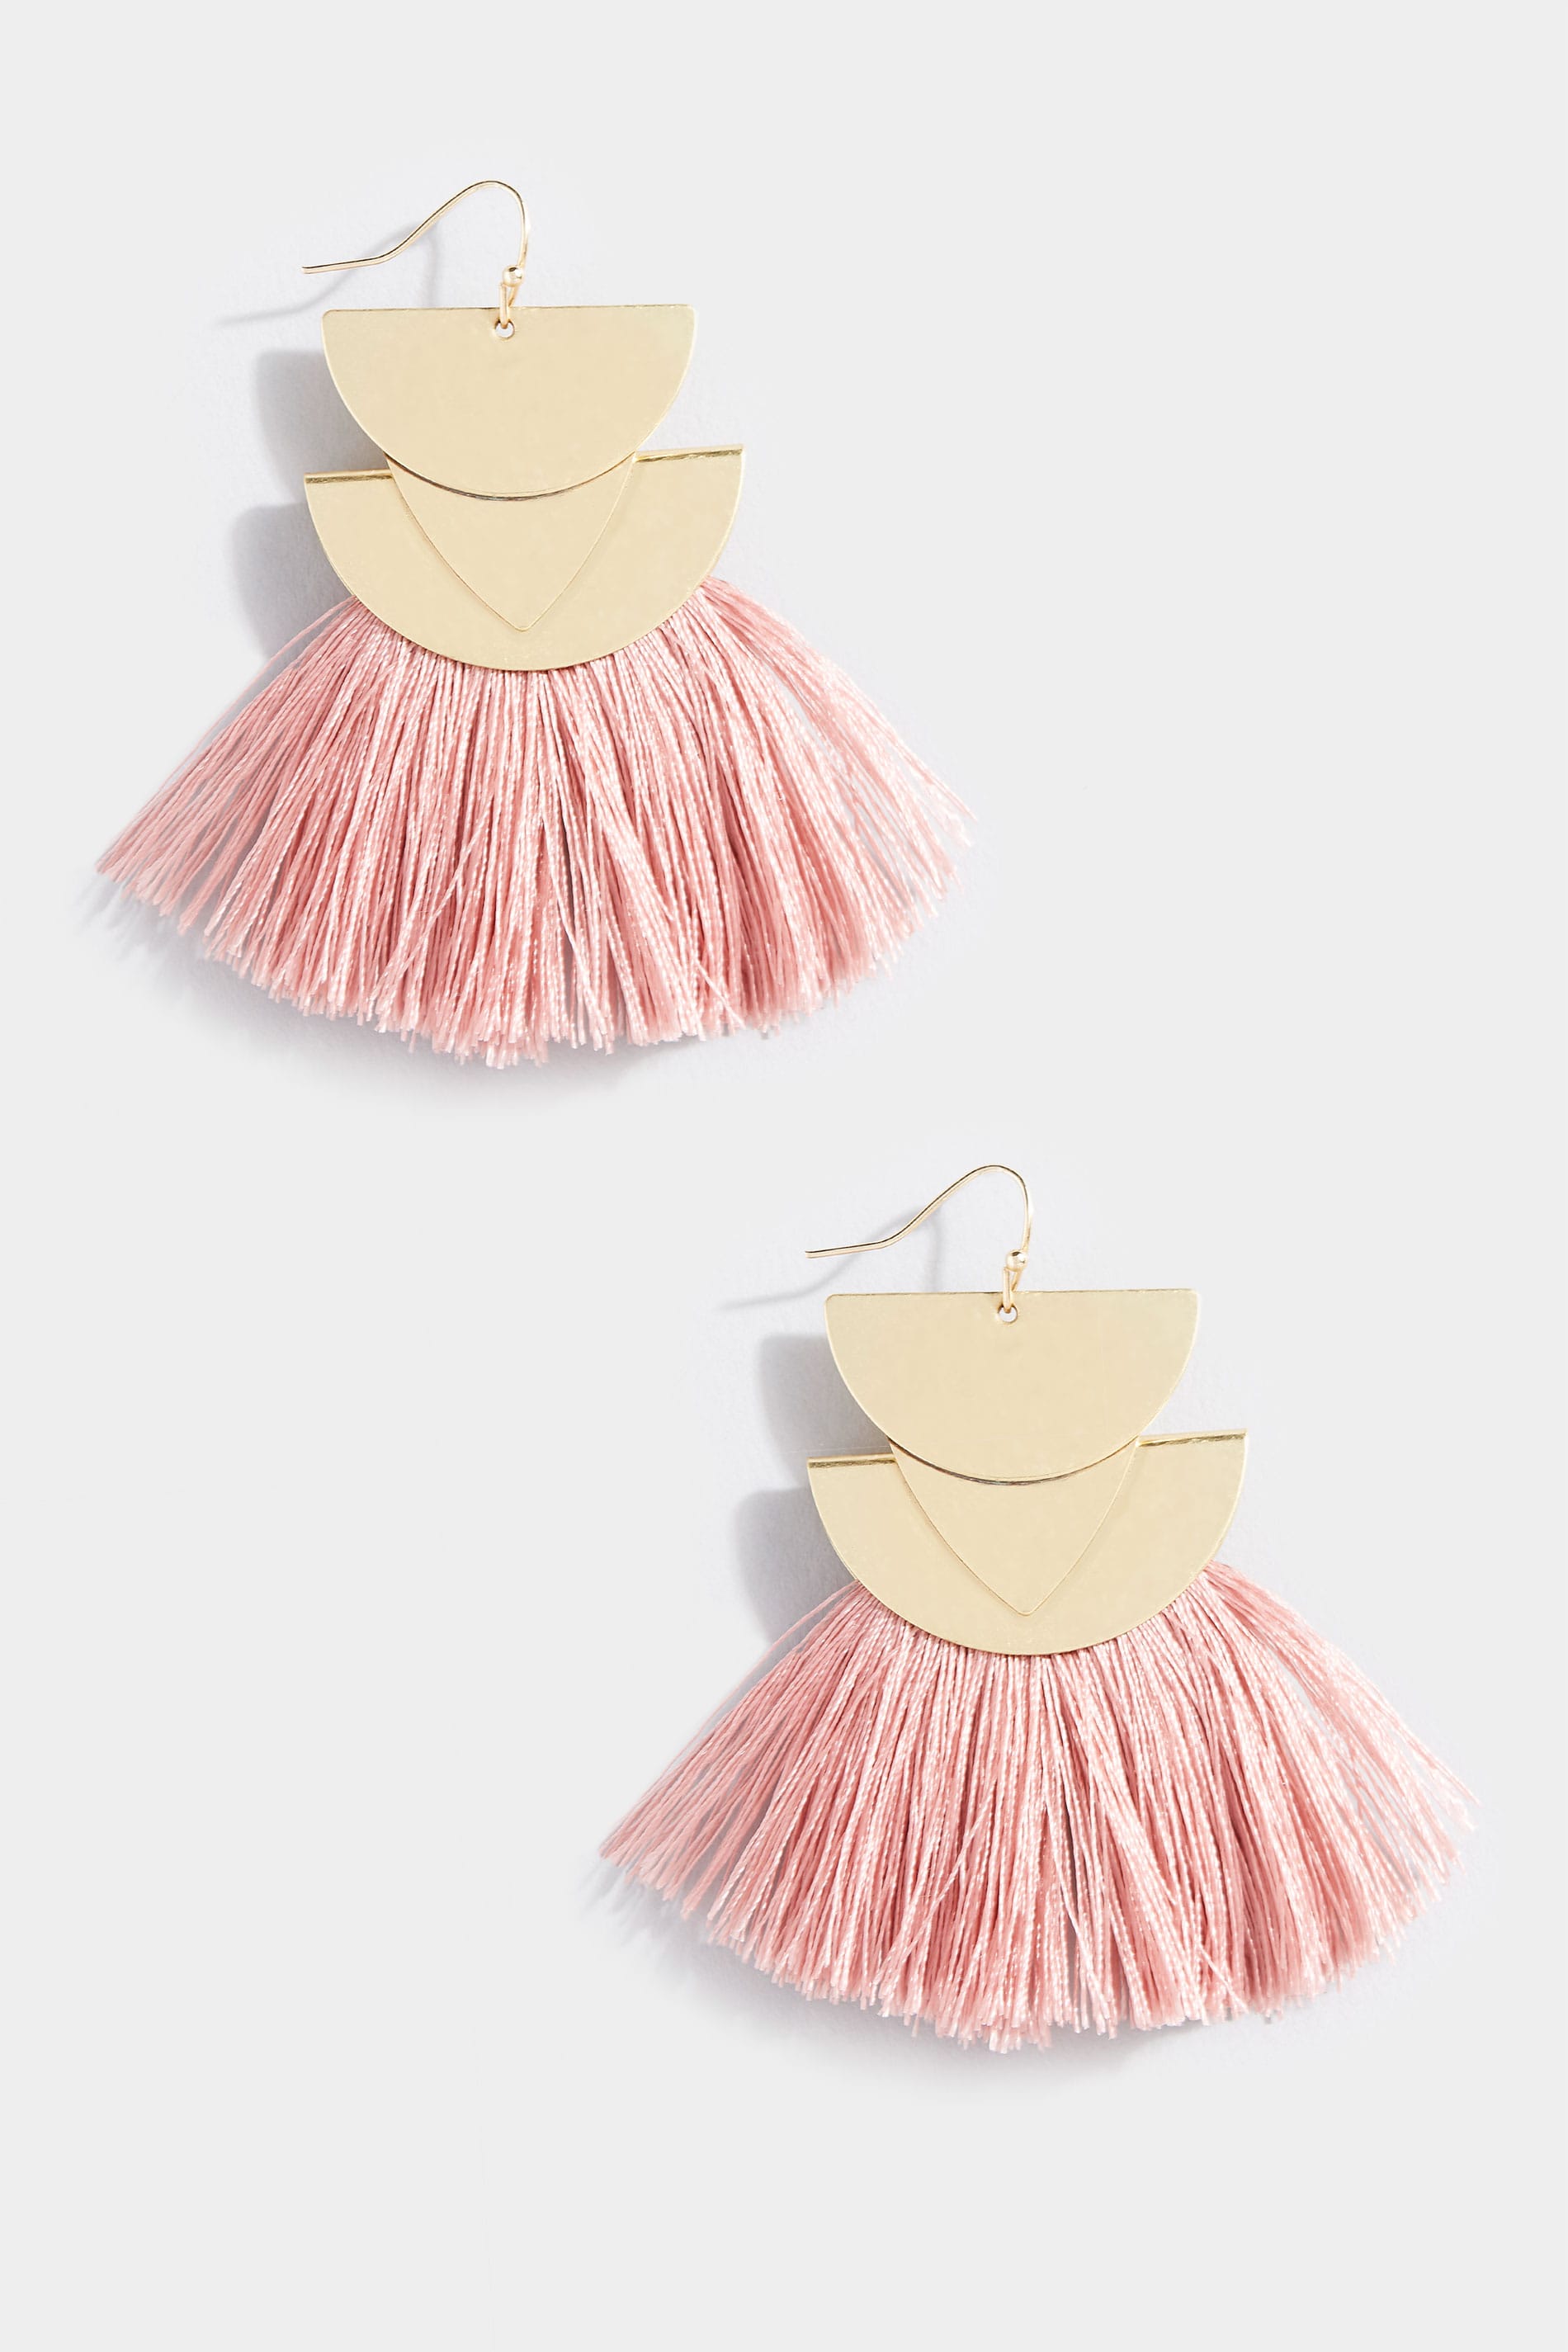 Gold and Pink Tassel Earrings_2da2.jpg